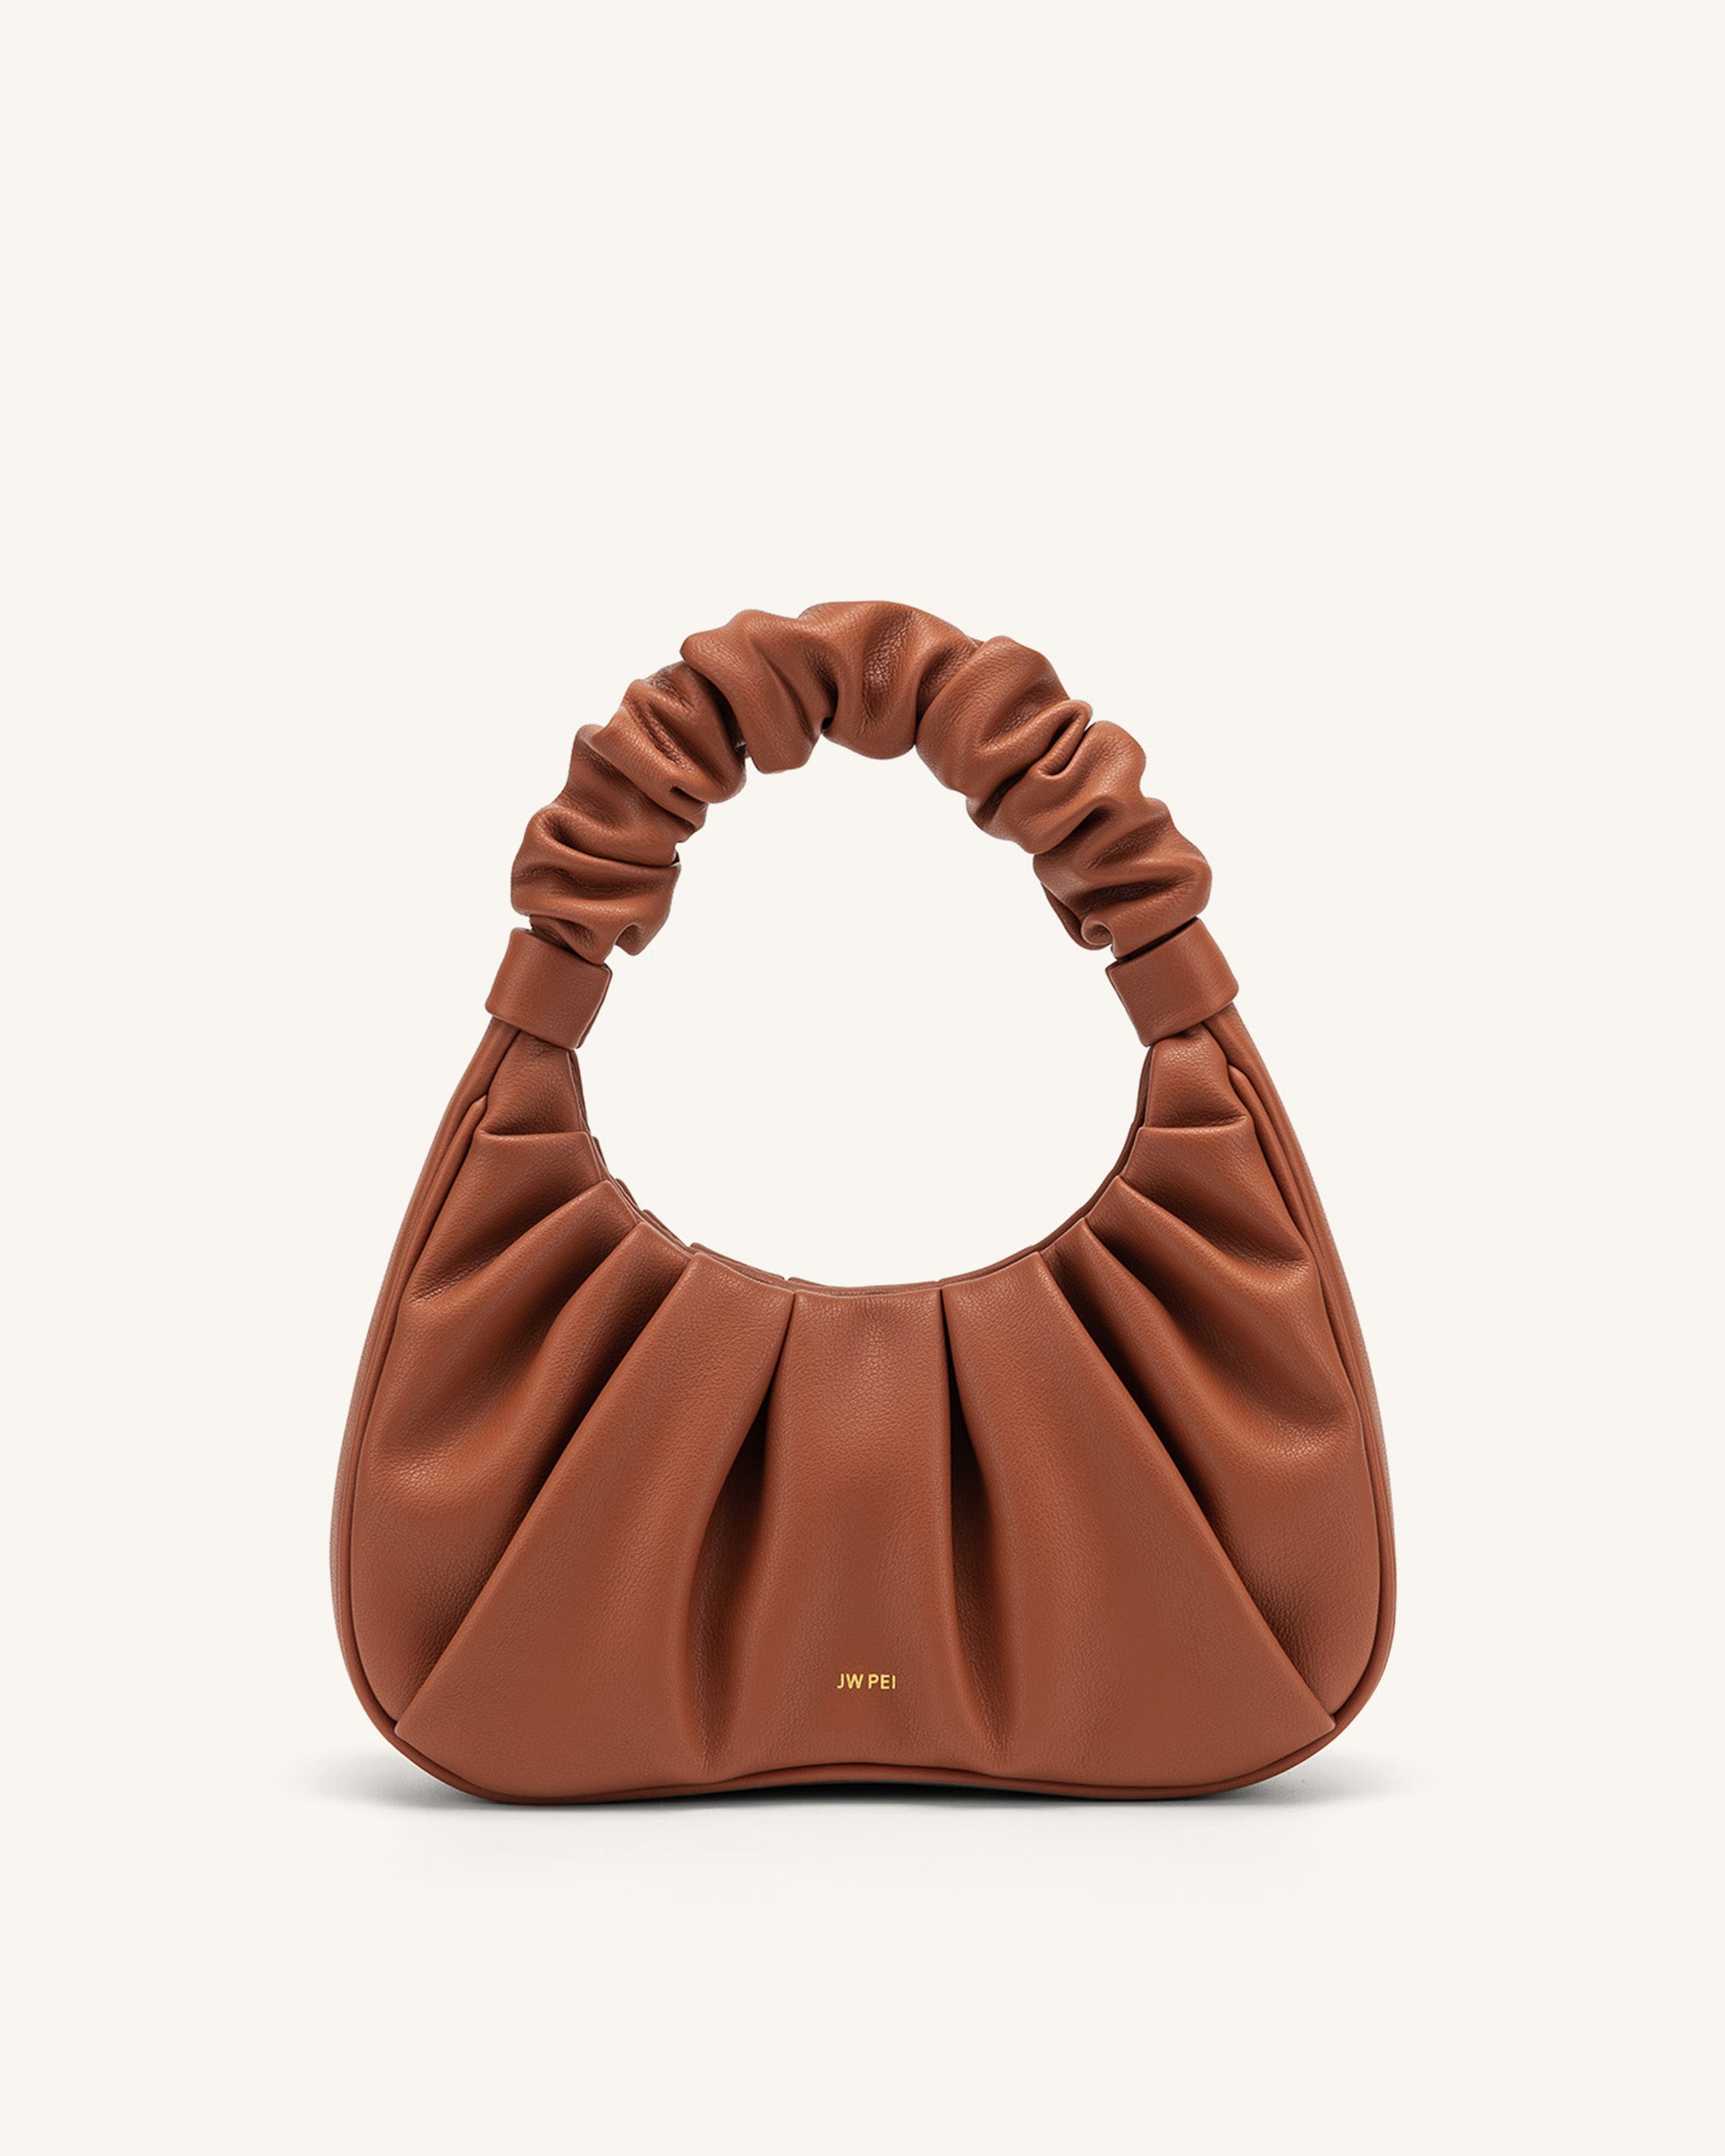 The JW PEI Gabbi Handbag Is on Sale at